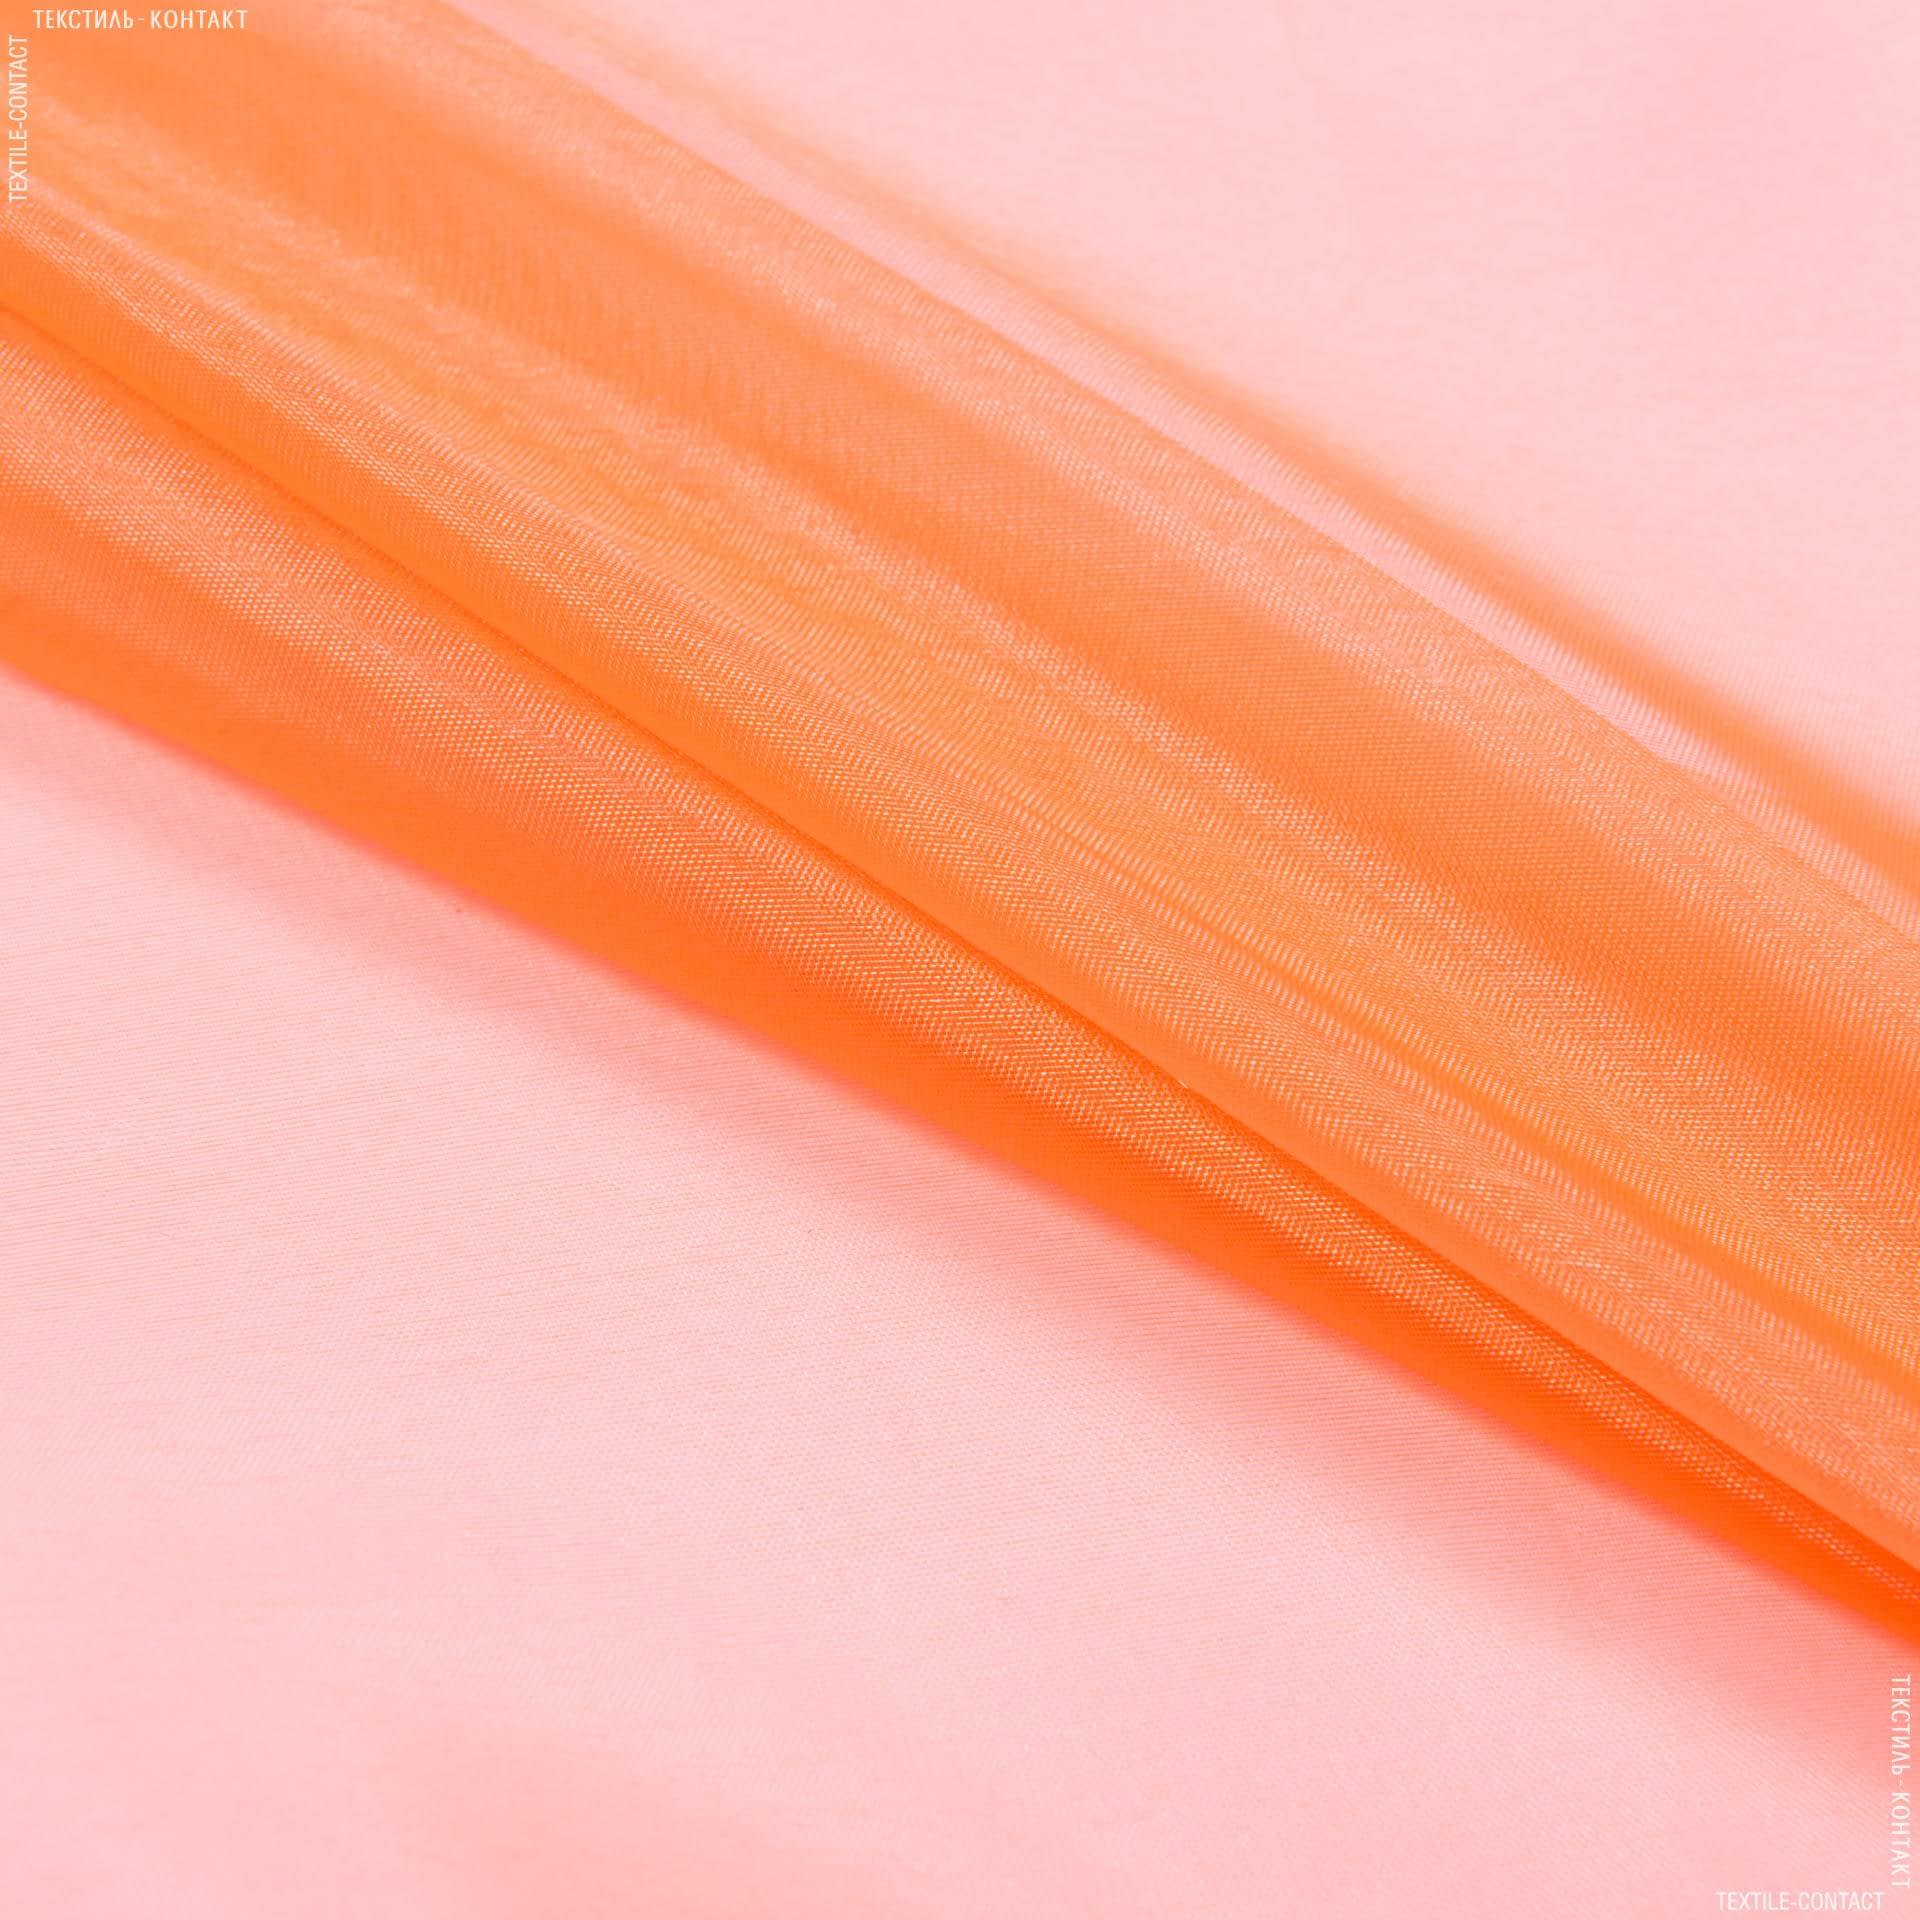 Ткани для платьев - Органза ярко-оранжевый